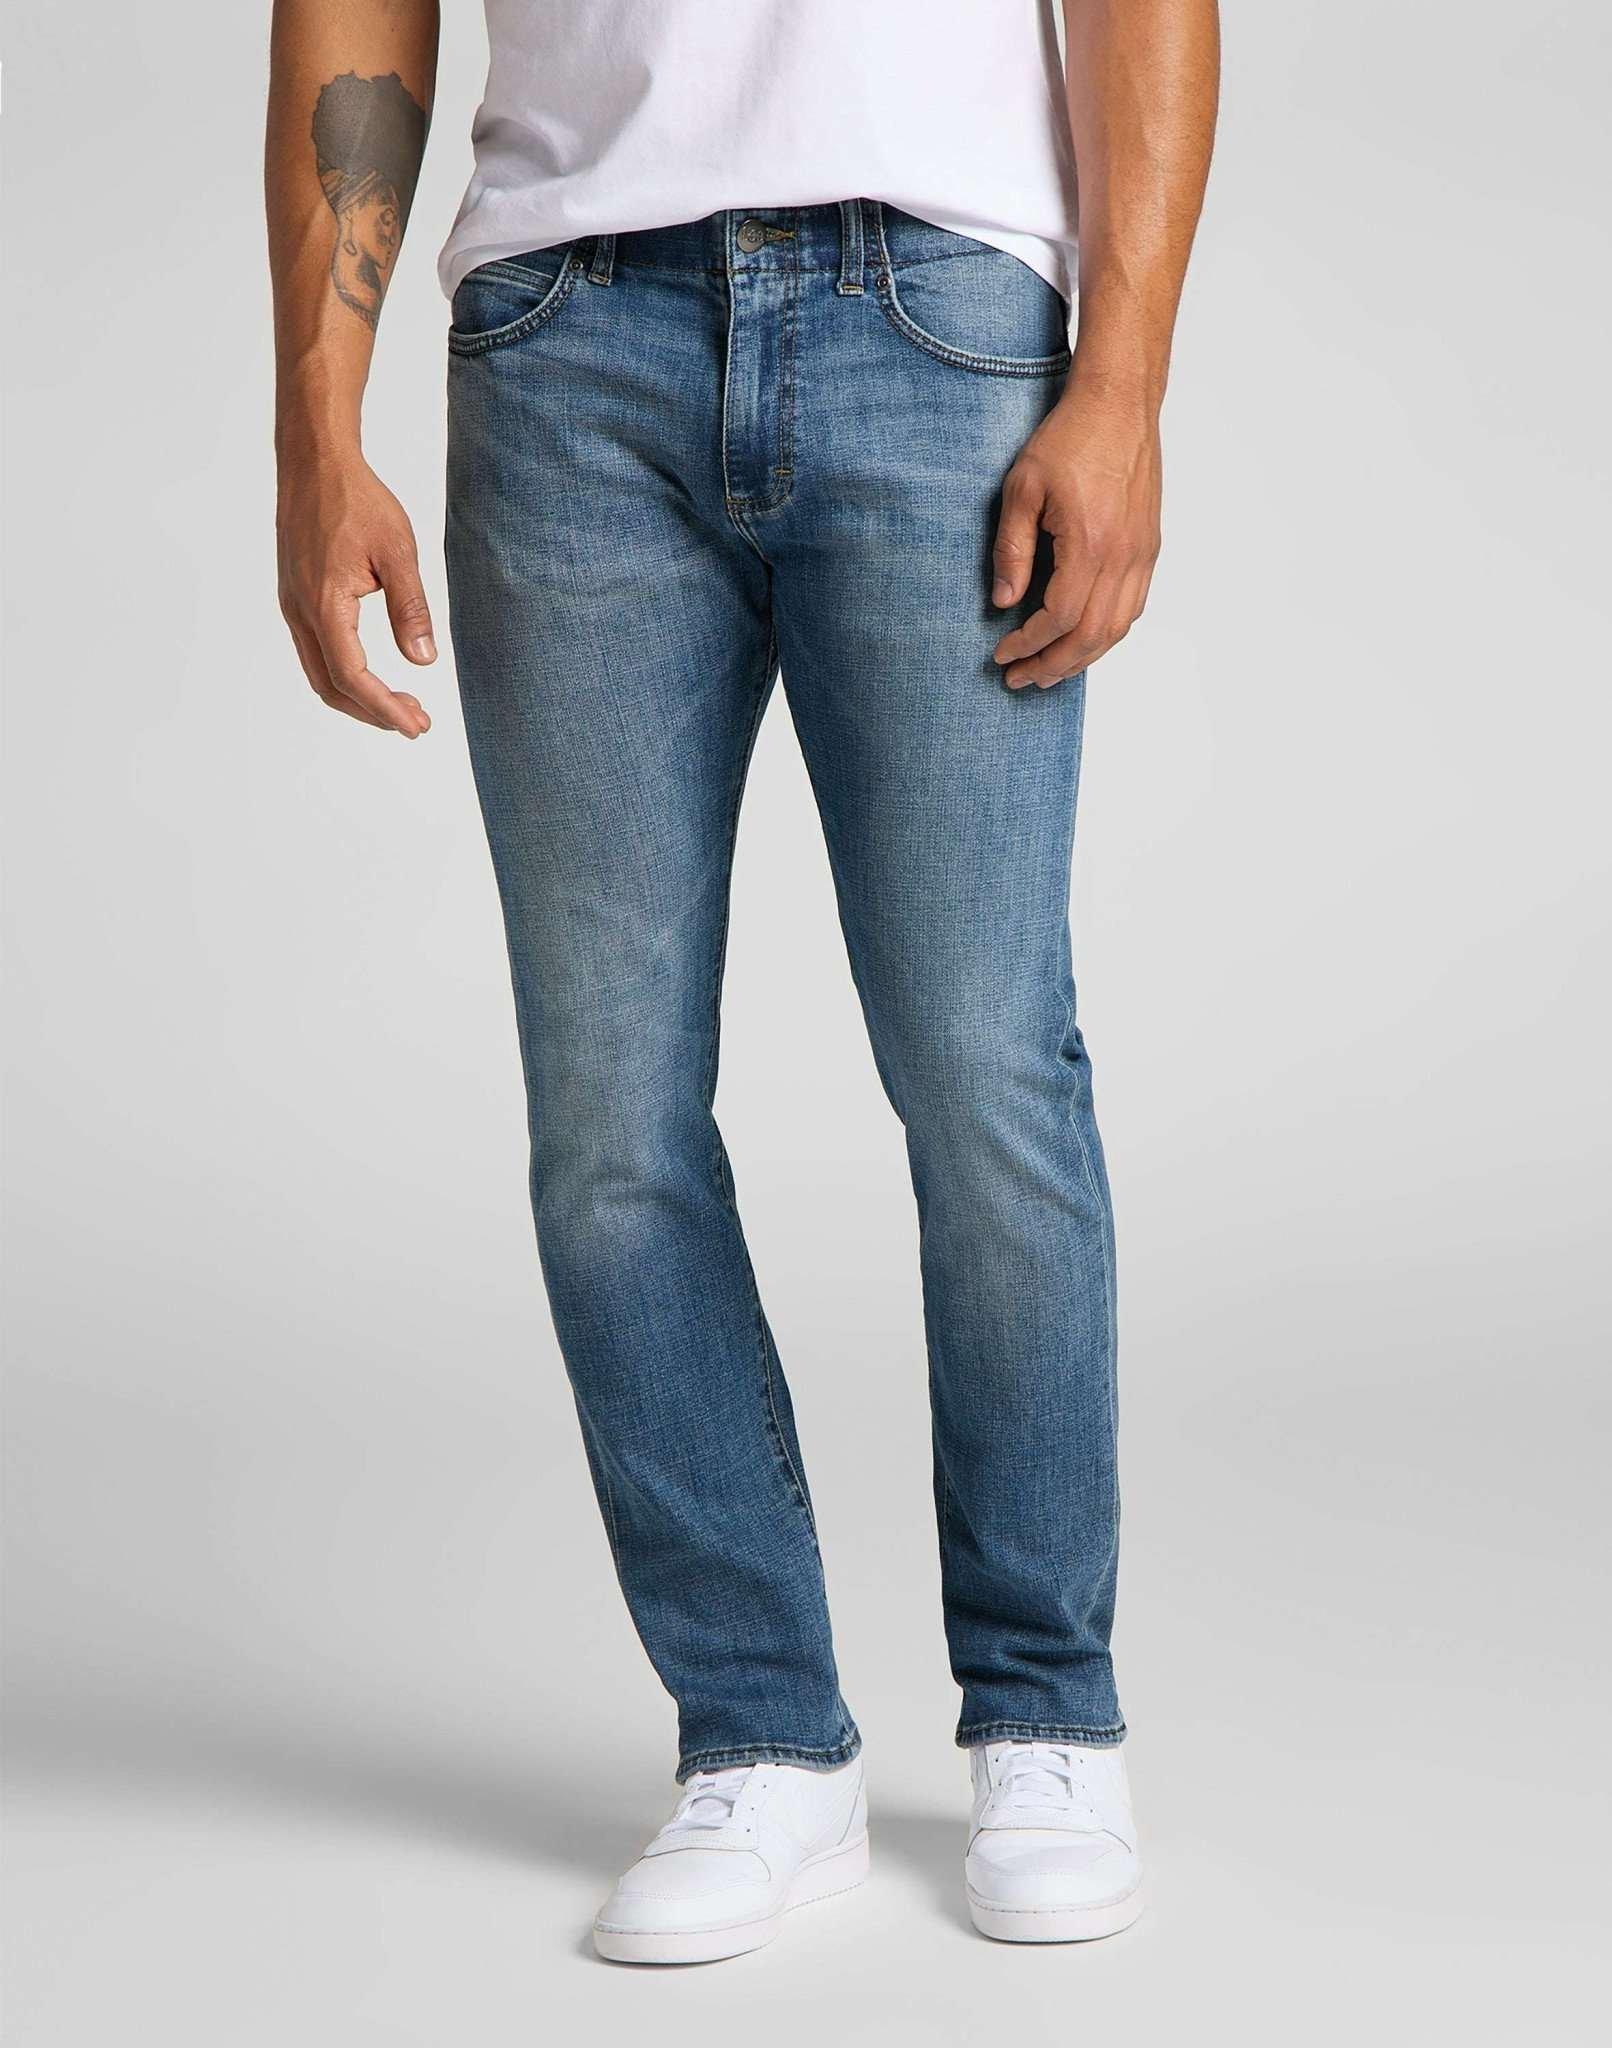 Jeans Slim Fit Mvp Herren Blau Denim L32/W28 von Lee